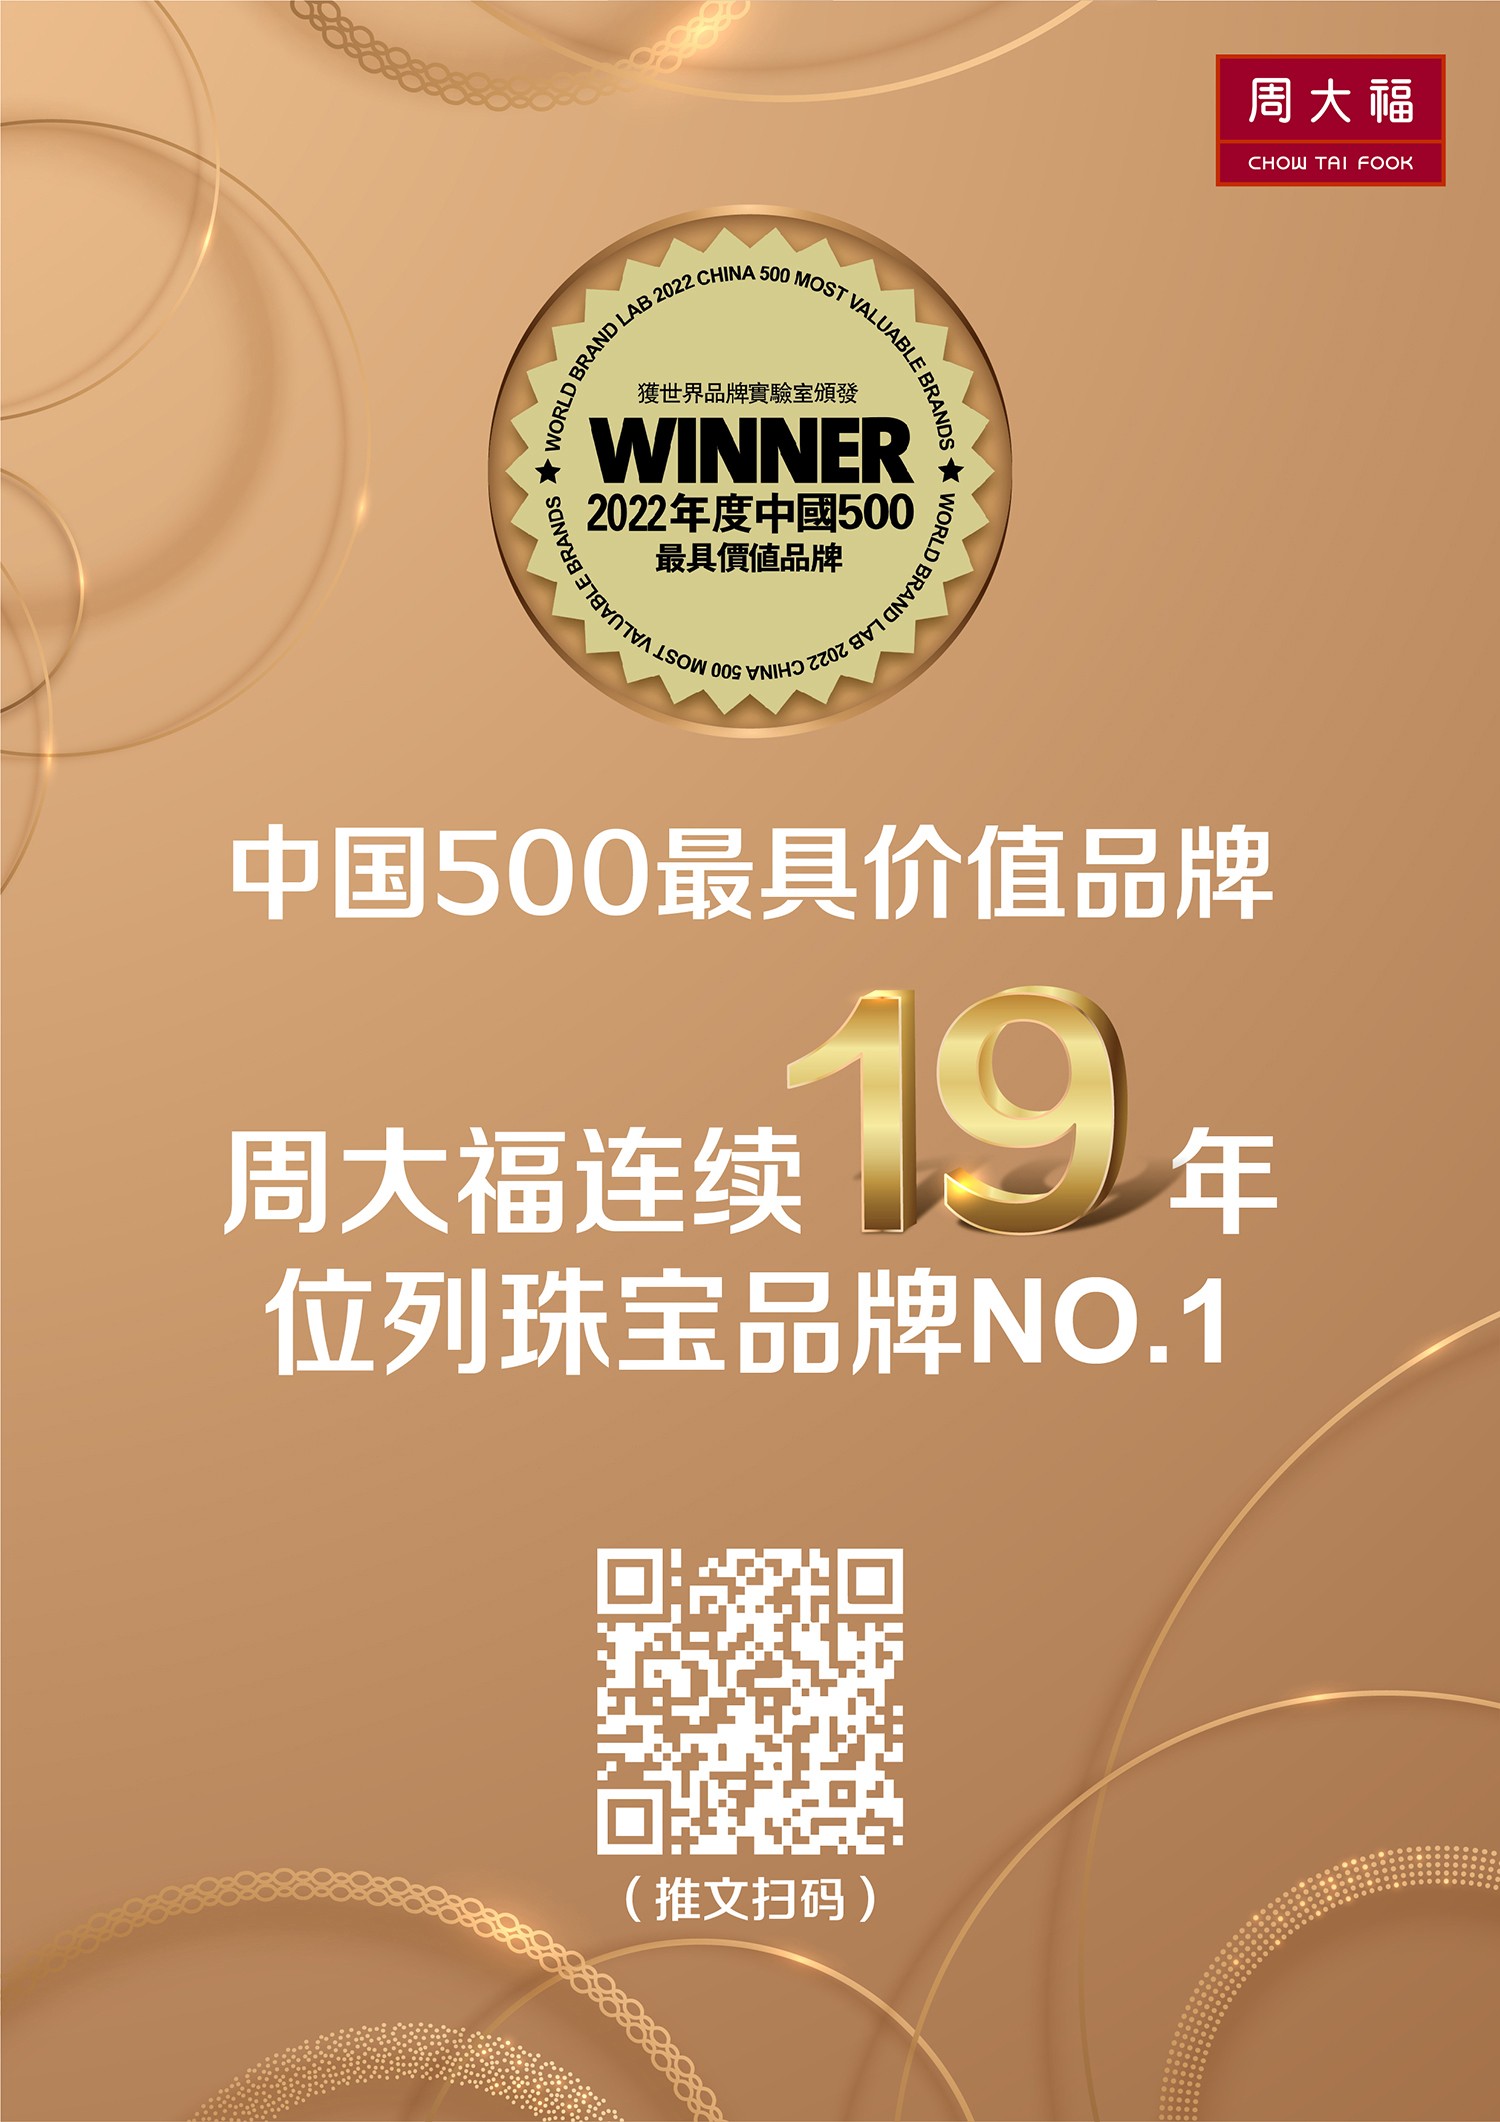 01 中国500最具价值品牌_A4台牌-通用.jpg